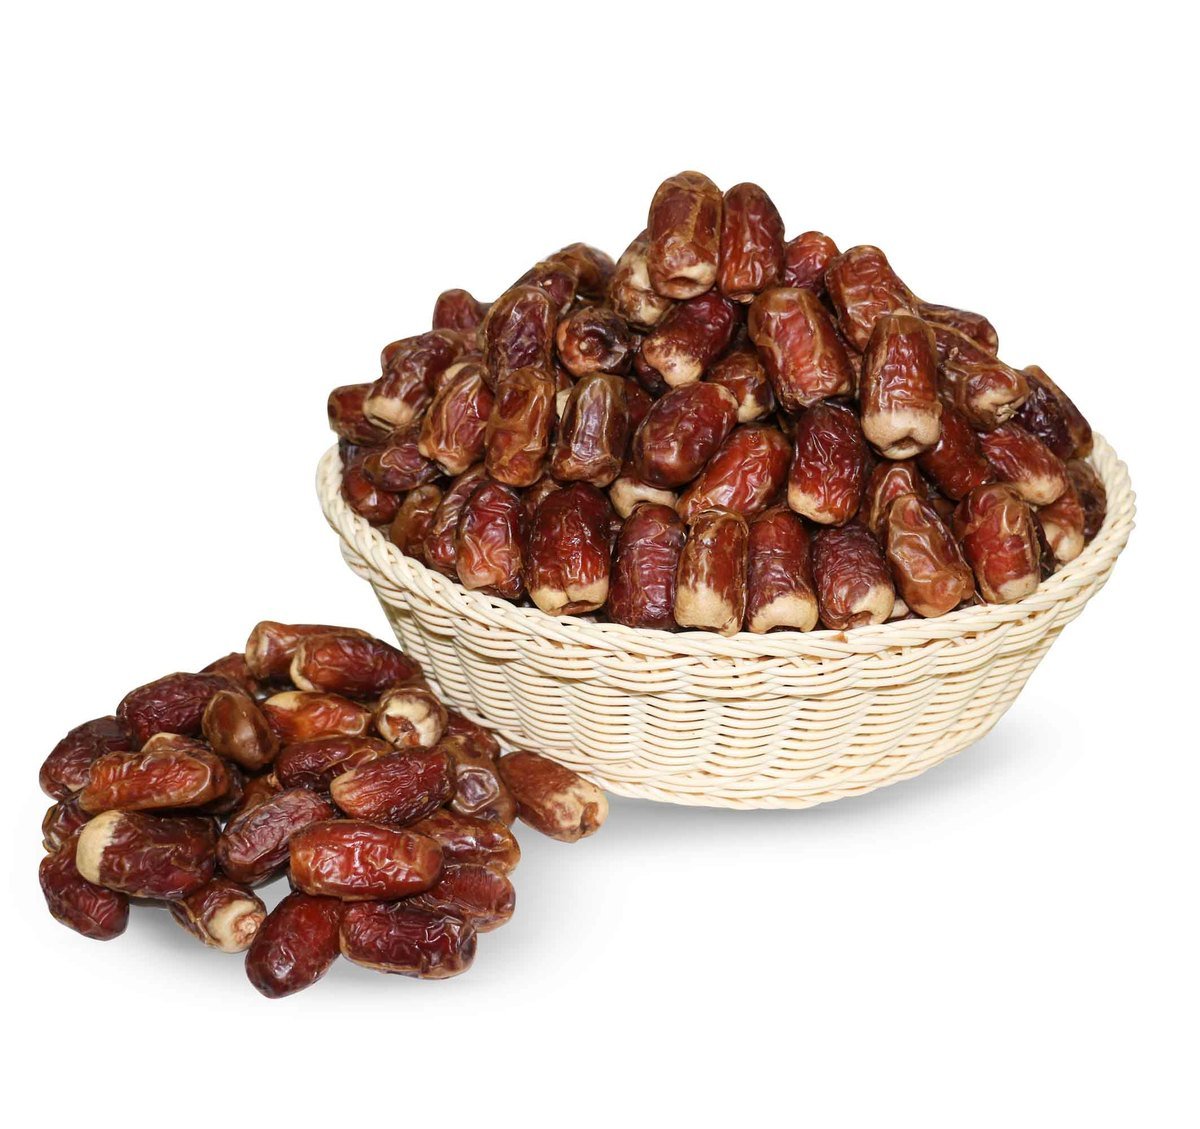 اشتري قم بشراء تمر صقعي 1 كجم تقريباً Online at Best Price من الموقع - من لولو هايبر ماركت Roastery Dried Fruit في السعودية